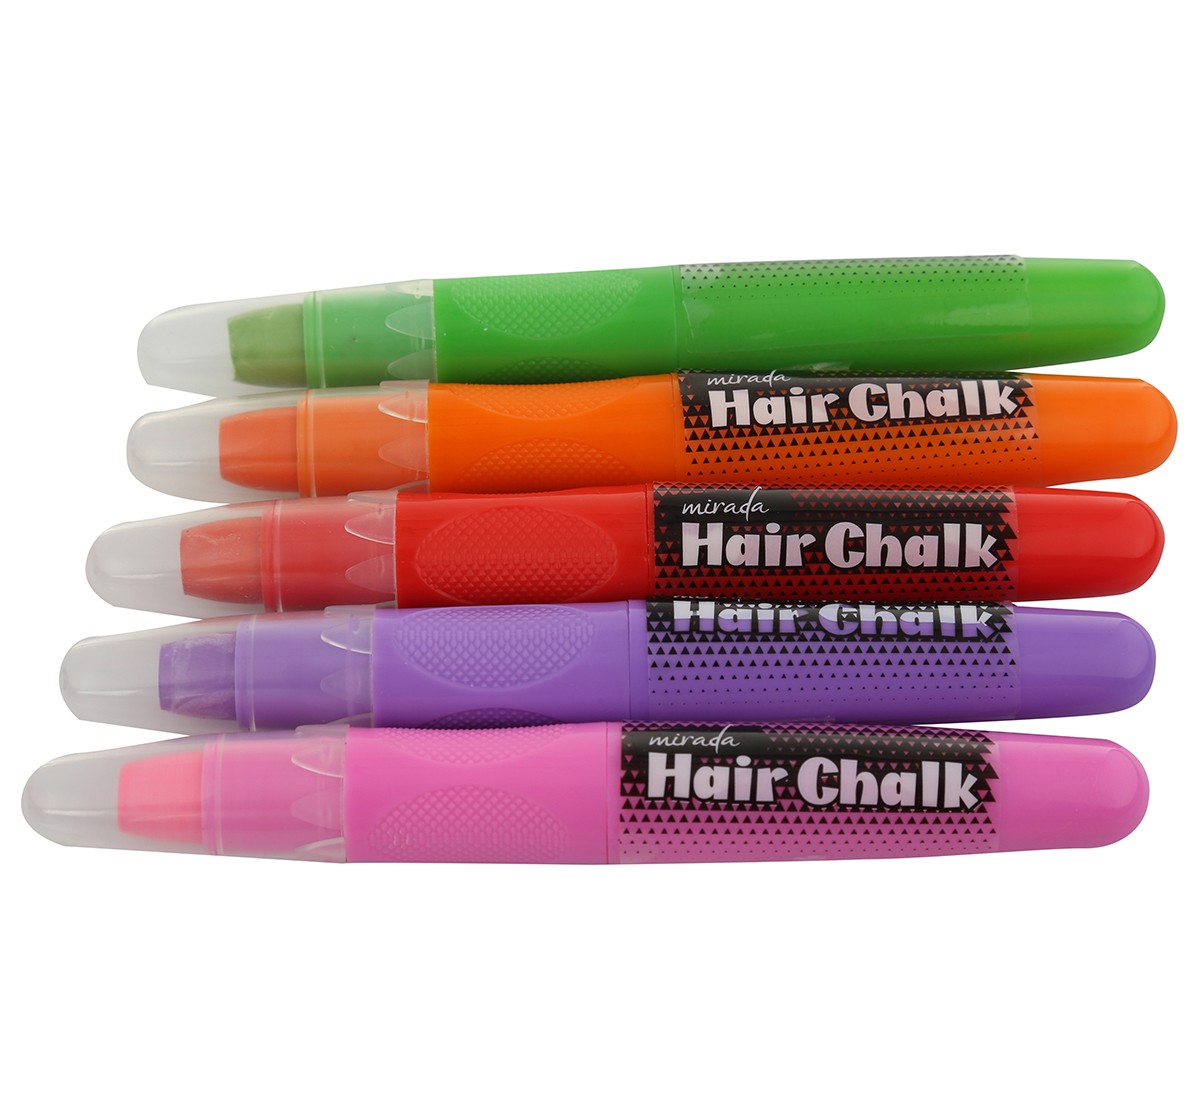 Mirada Hair chalk studio Multicolor 6Y+